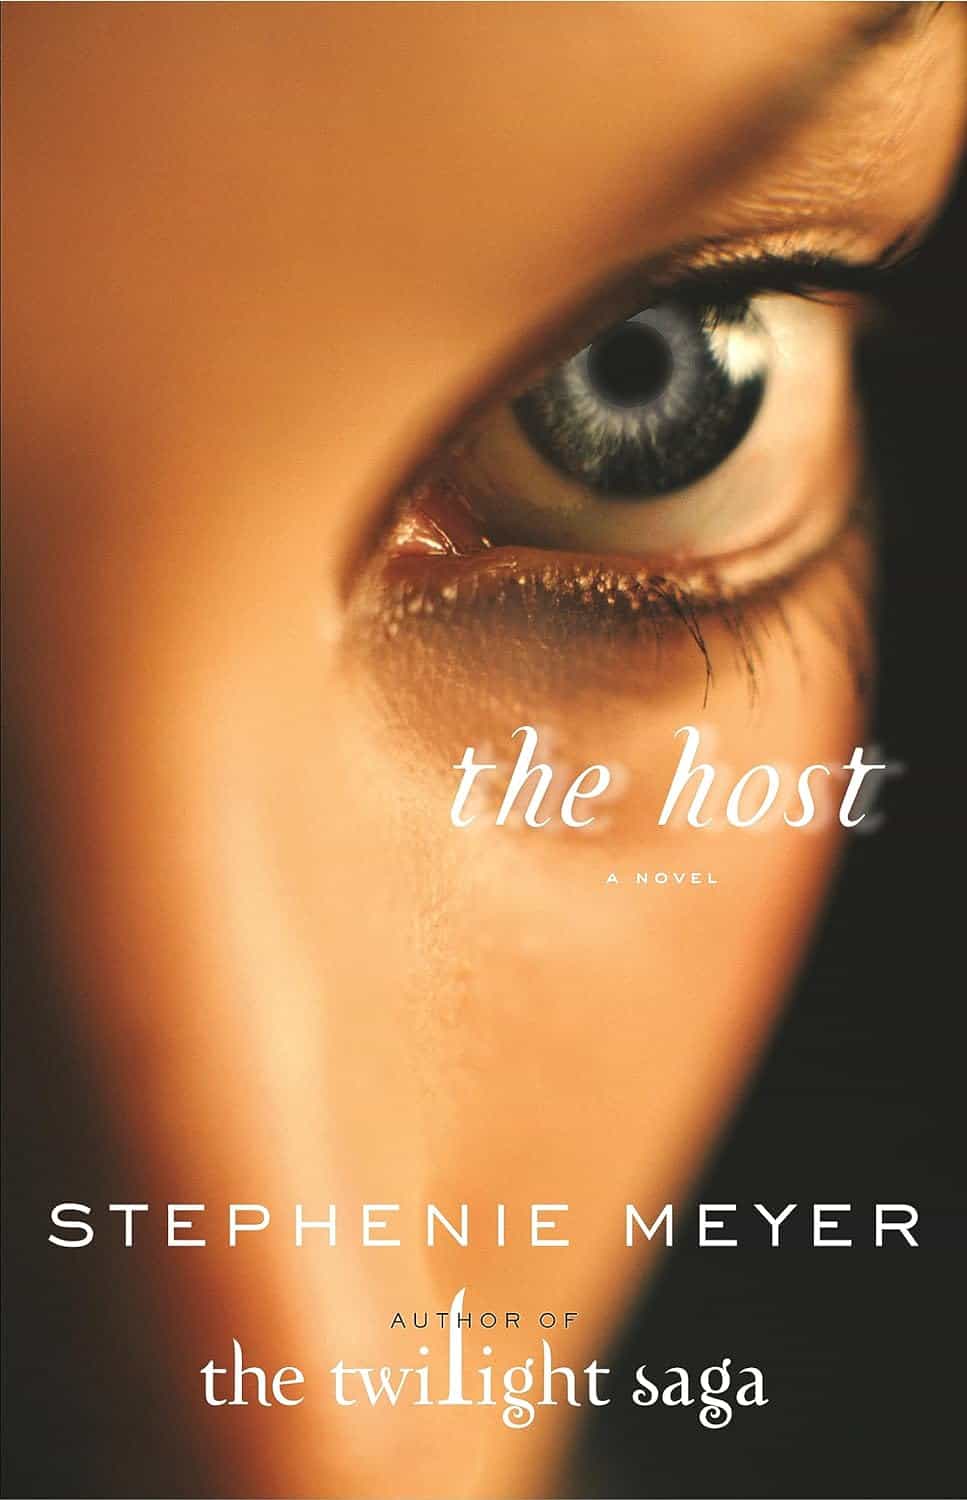 "The Host" by Stephanie Meyer